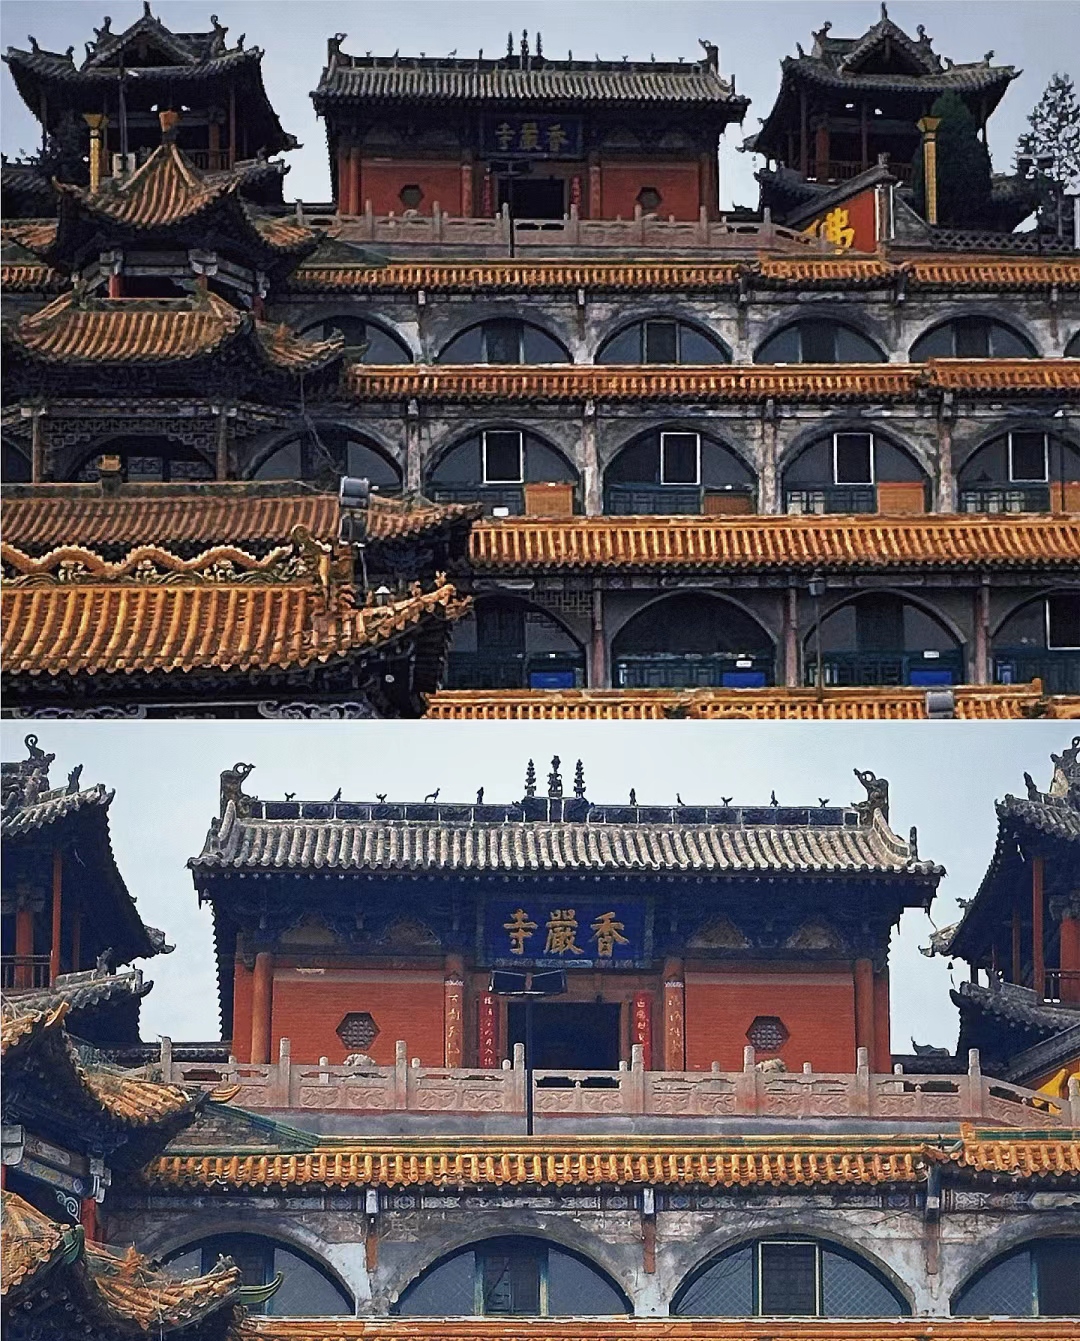 柳林香严寺|一金七元的黑釉琉璃建筑柳林香严寺位于山西省柳林县